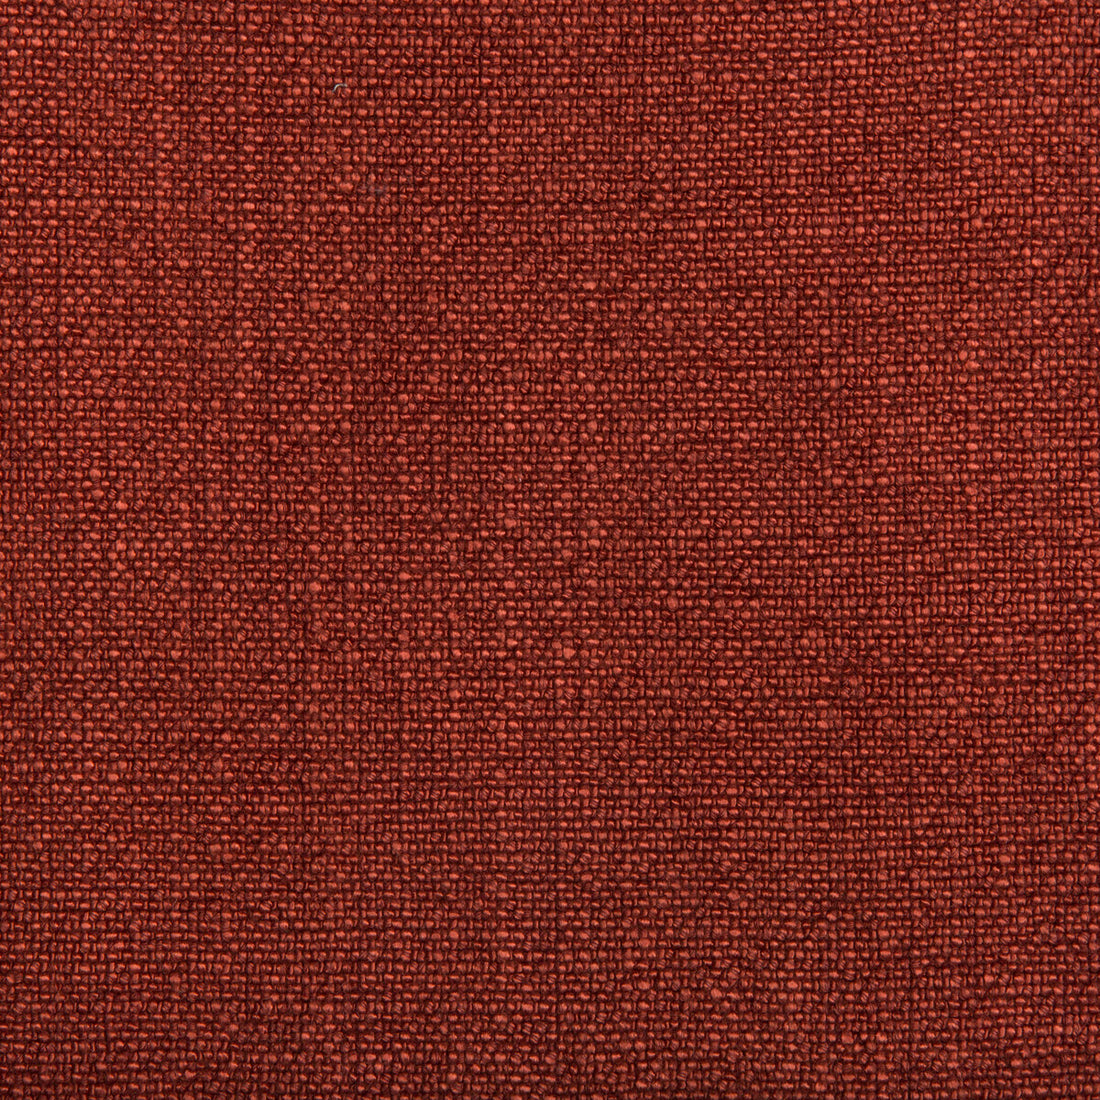 Kravet Basics fabric in 35189-24 color - pattern 35189.24.0 - by Kravet Basics